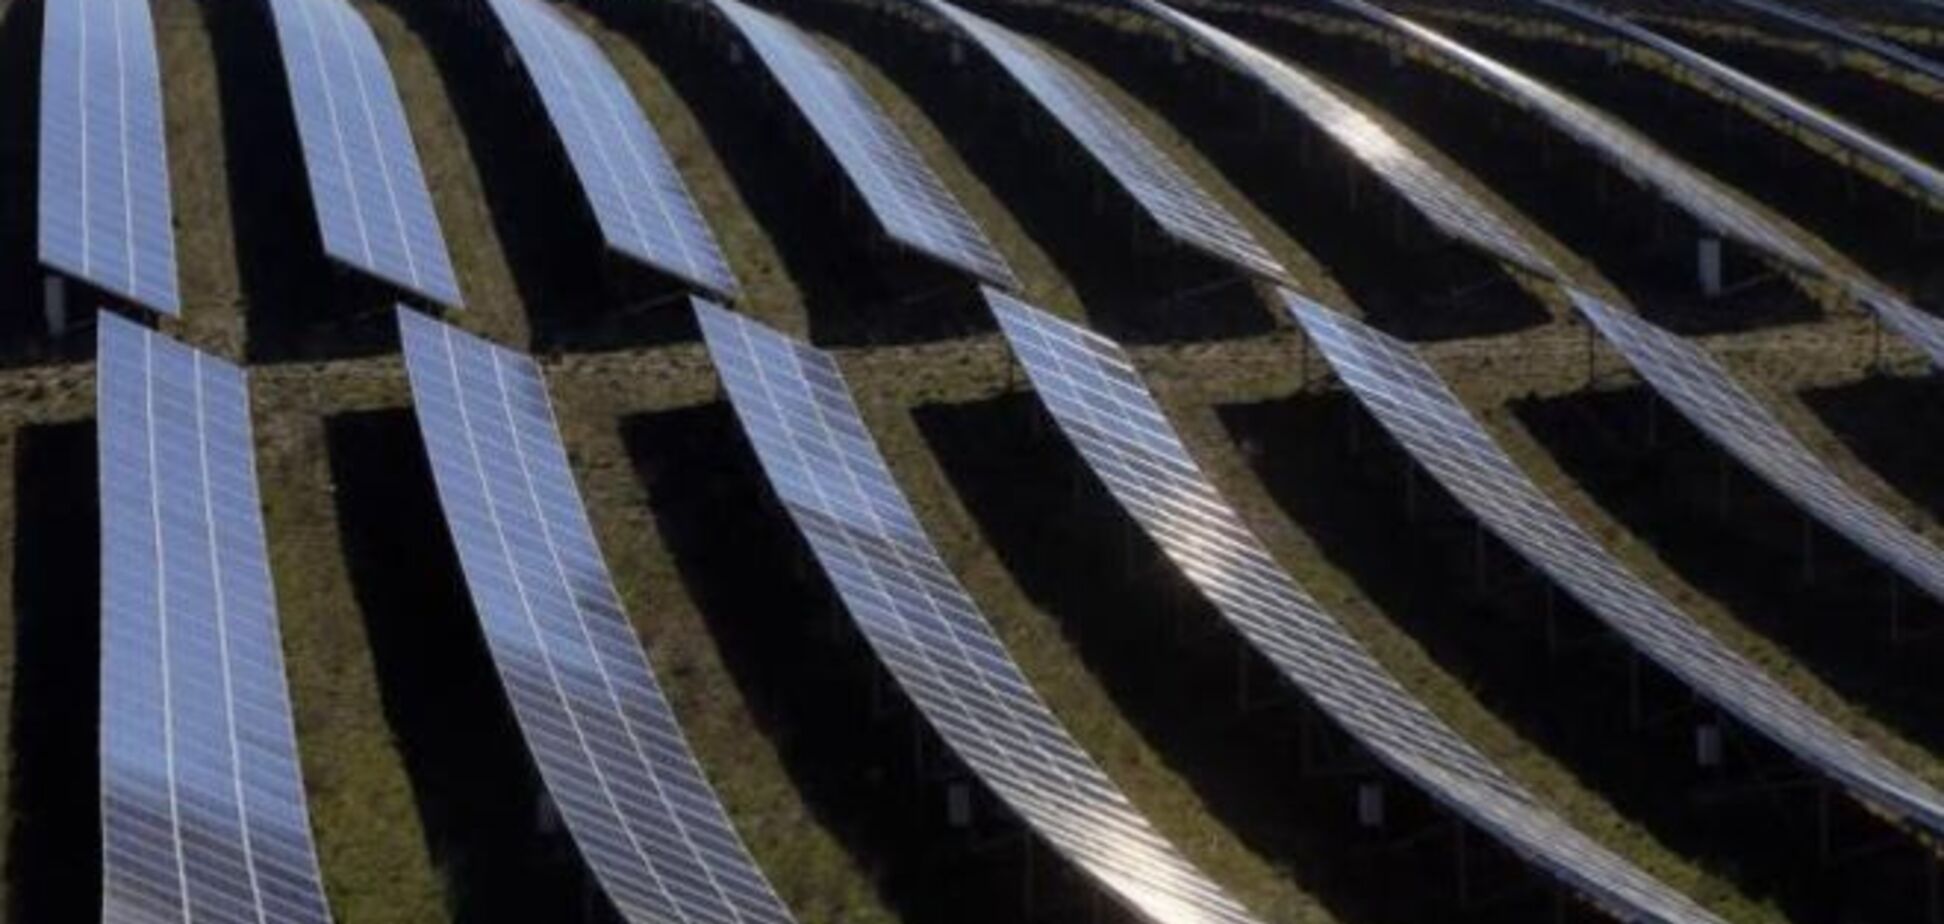 Невероятная долина солнечных батарей во Франции